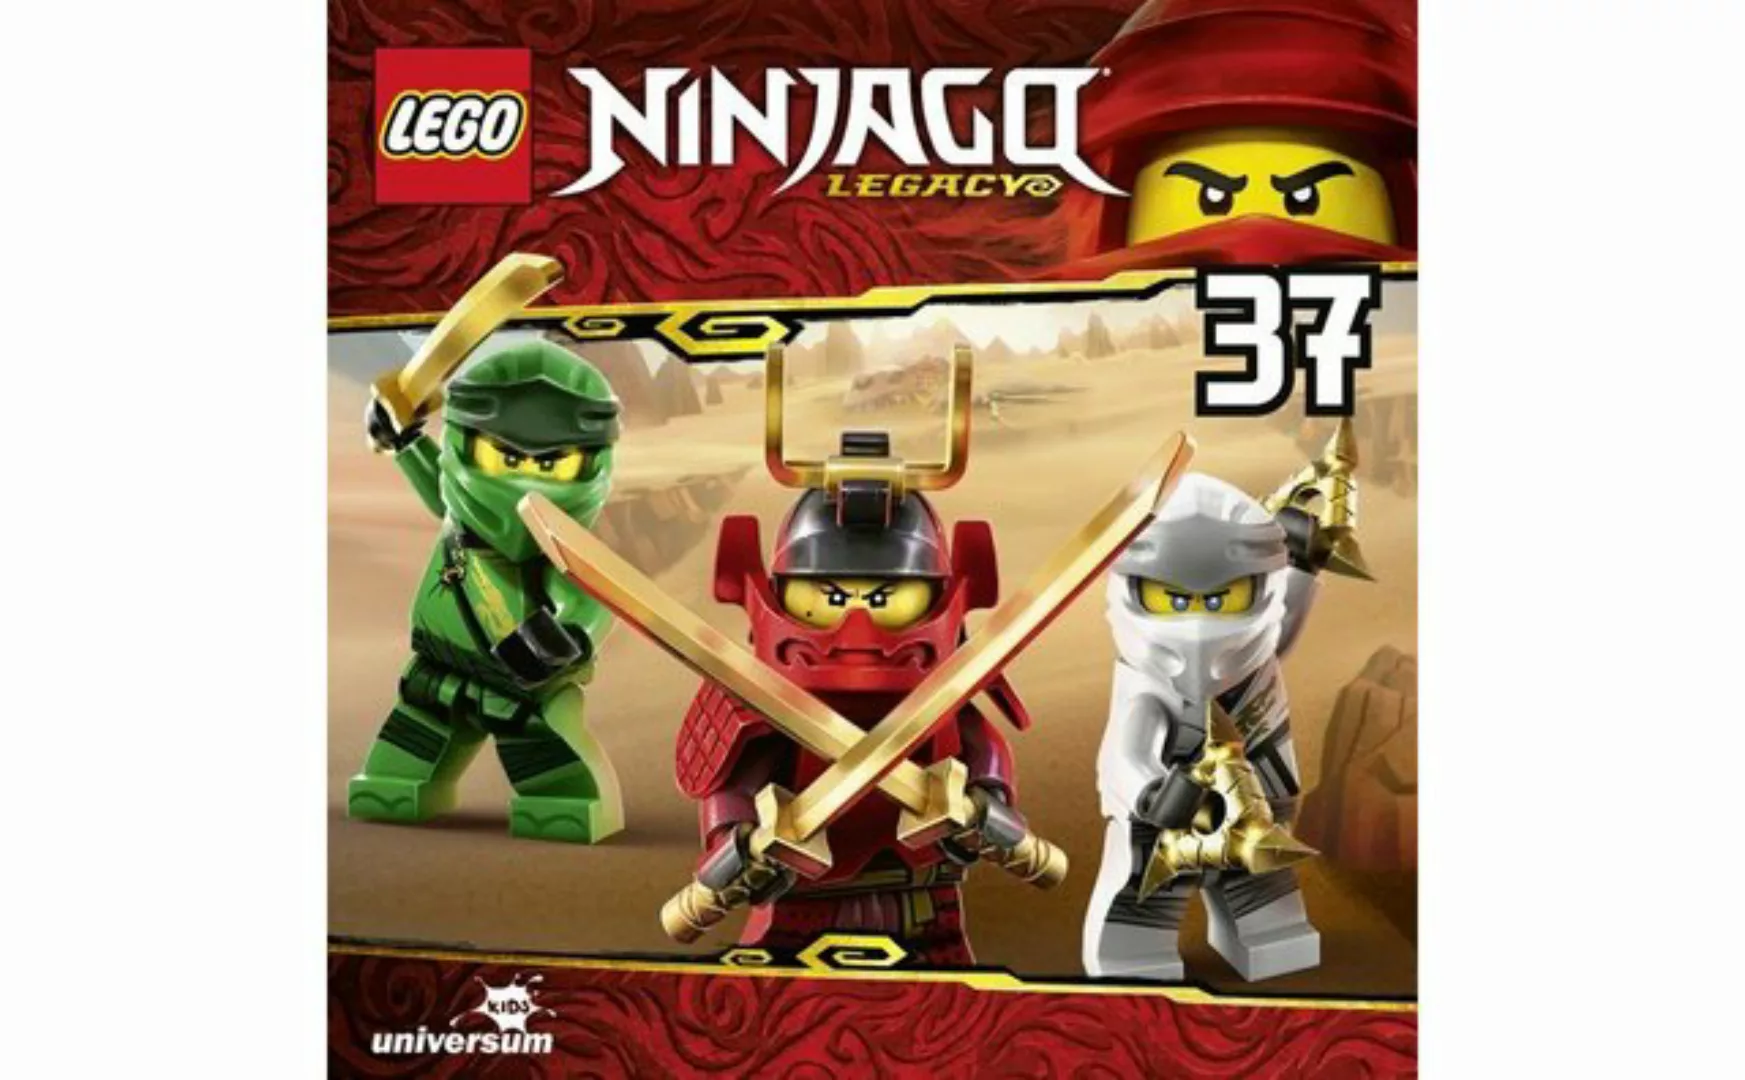 Leonine Hörspiel-CD Lego Ninjago (37) günstig online kaufen